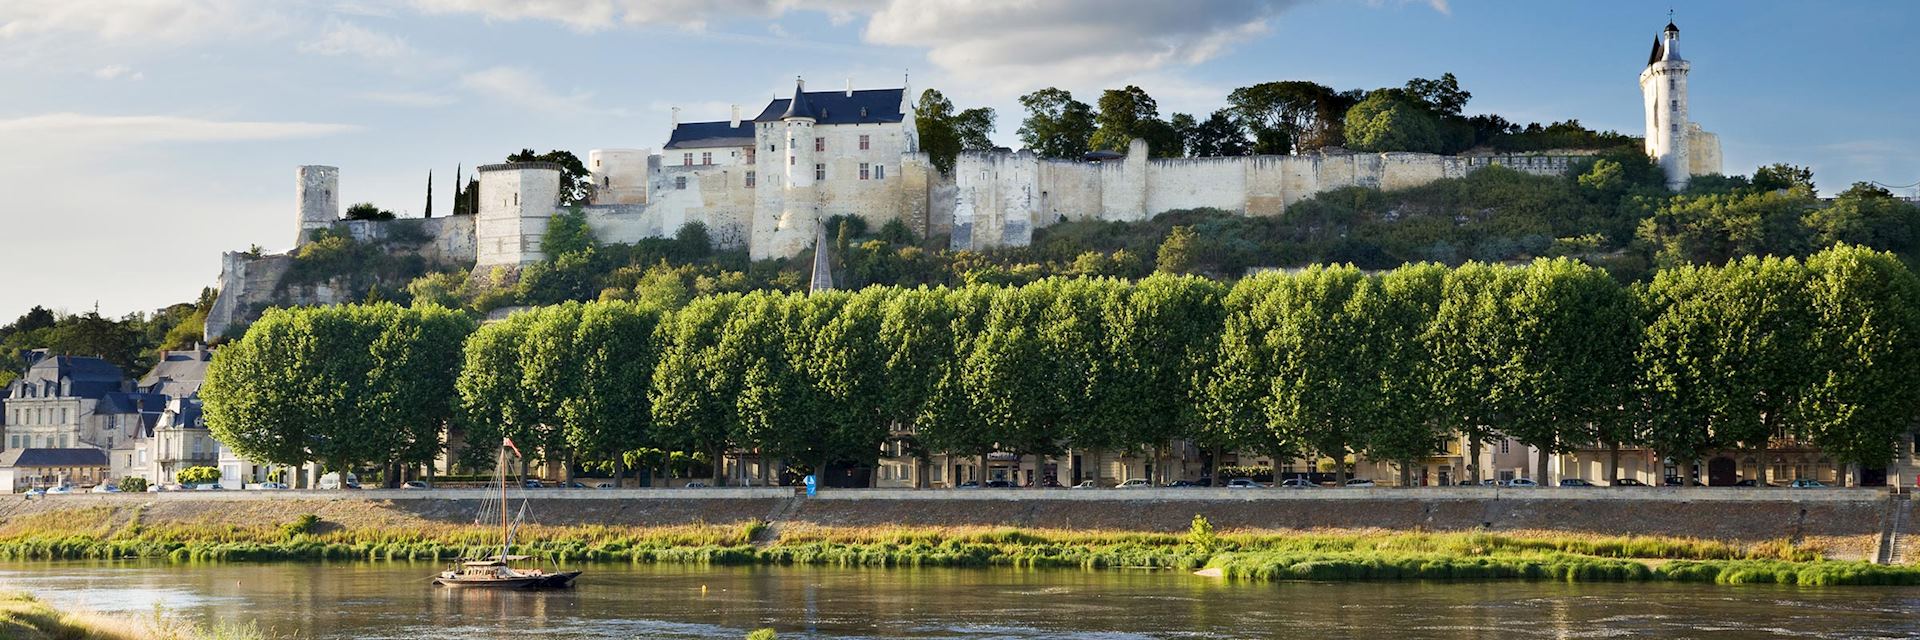 Chinon, Loire Valley